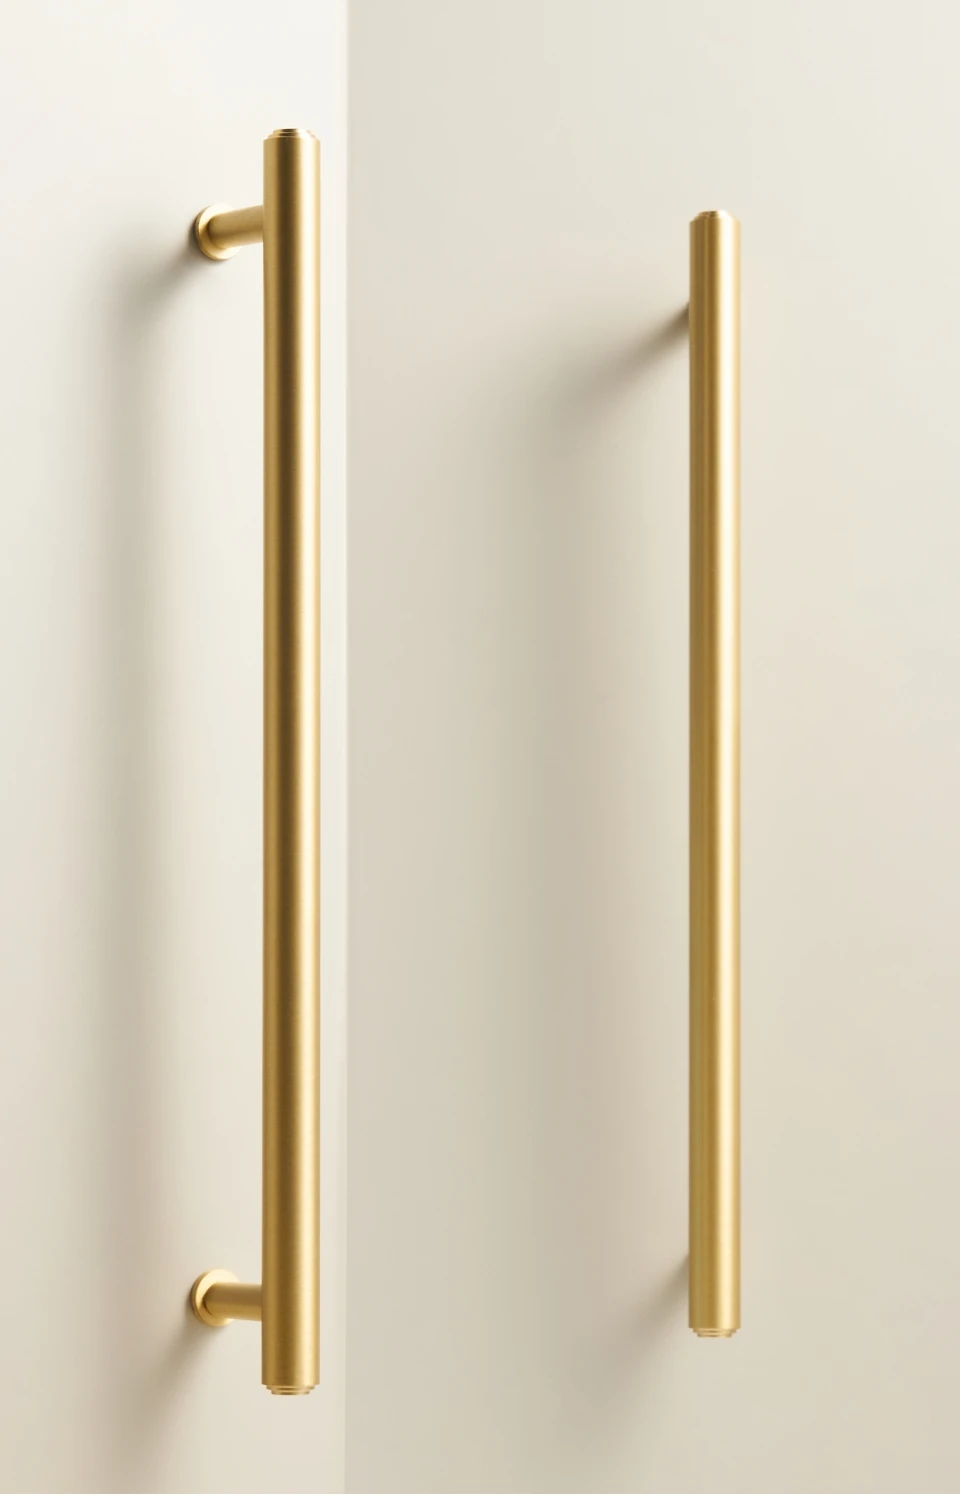 Nurlin Solid Brass Plain Cabinet Knob Matte Black Antique Brass T-bar Wardrobe Cabinet Drawer Door Handle Pull NEW